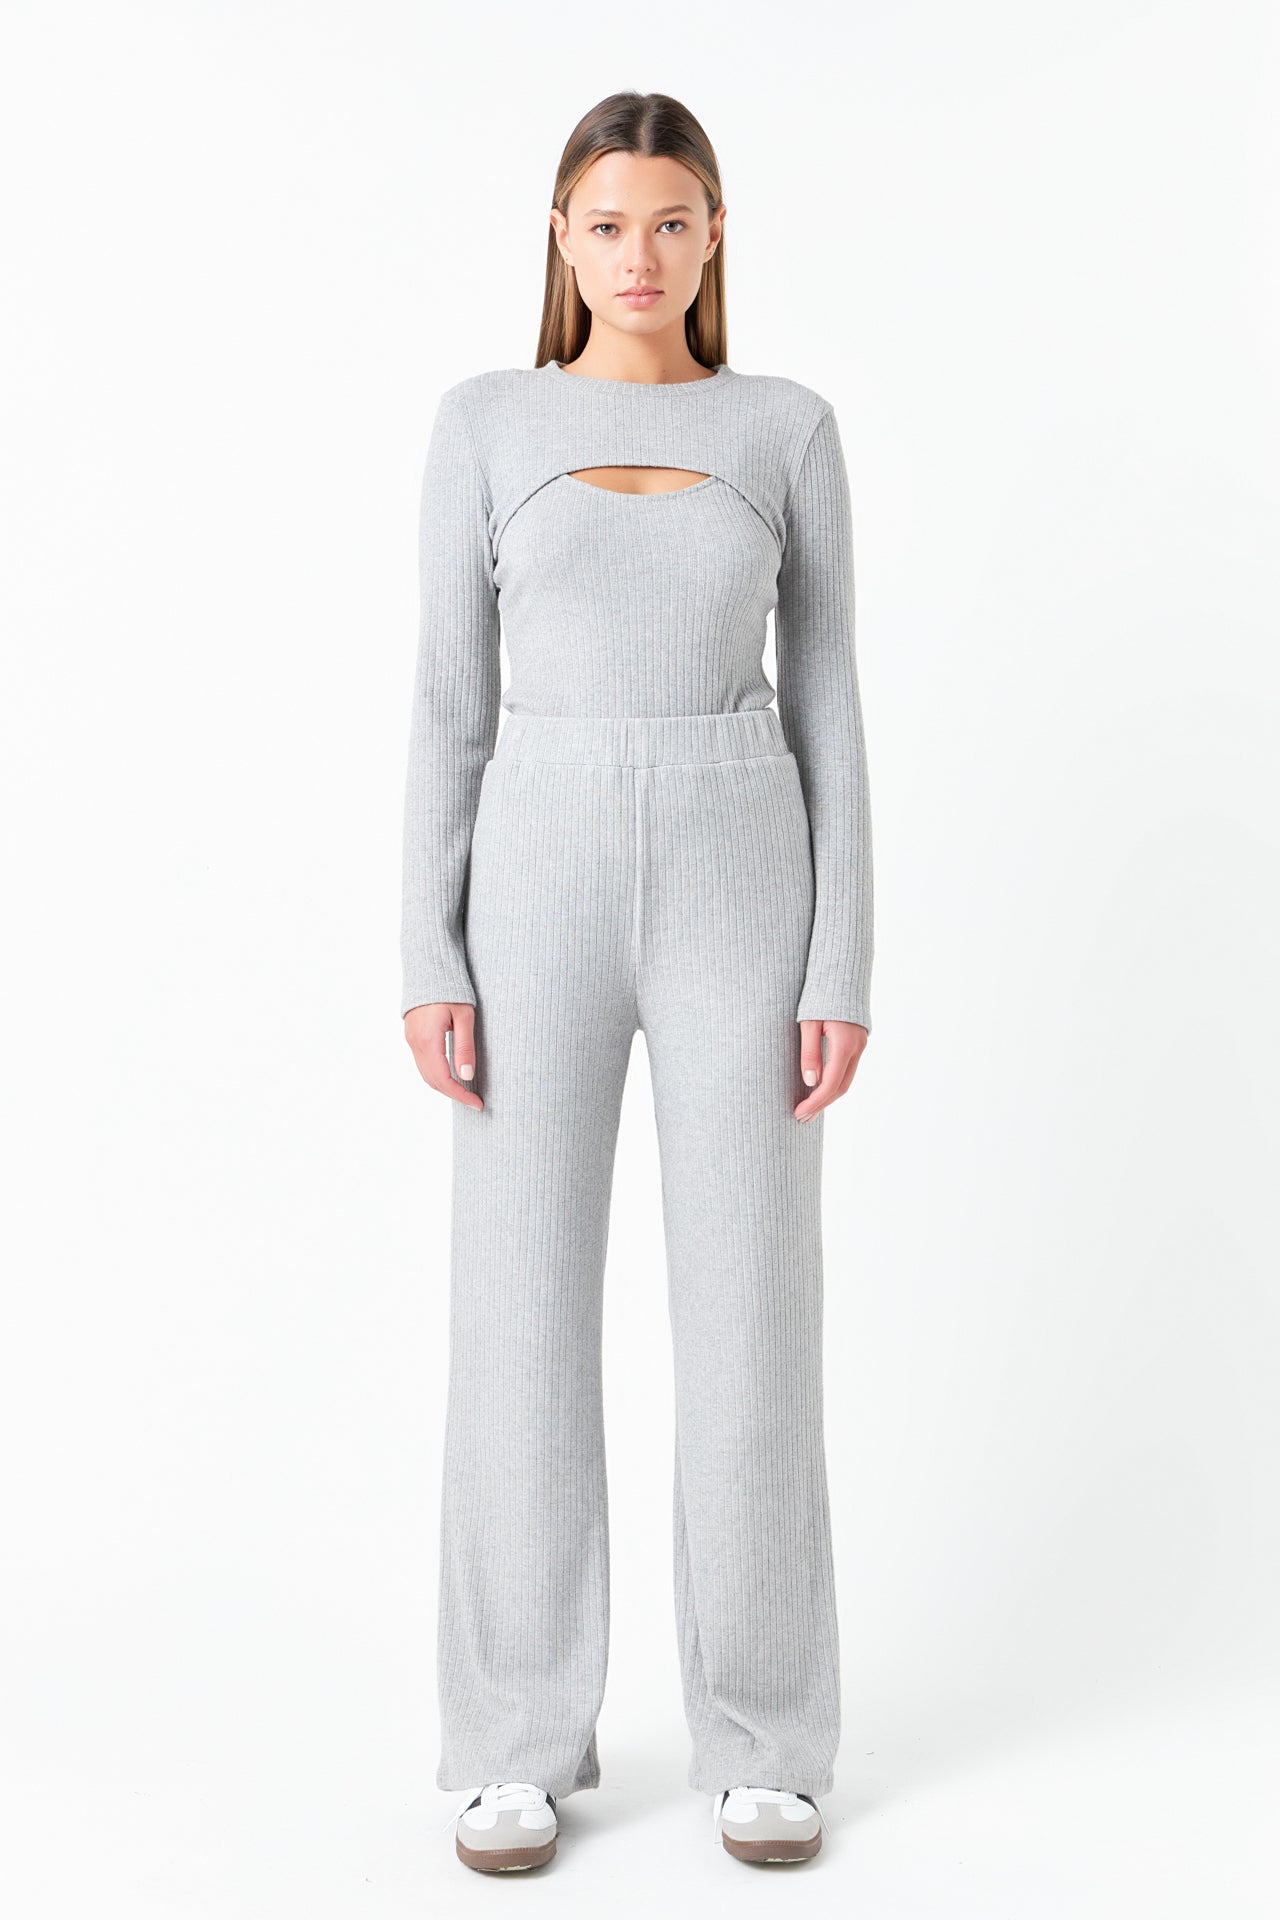 Grey Lab Women's Loungewear Cropped Sweatshirt